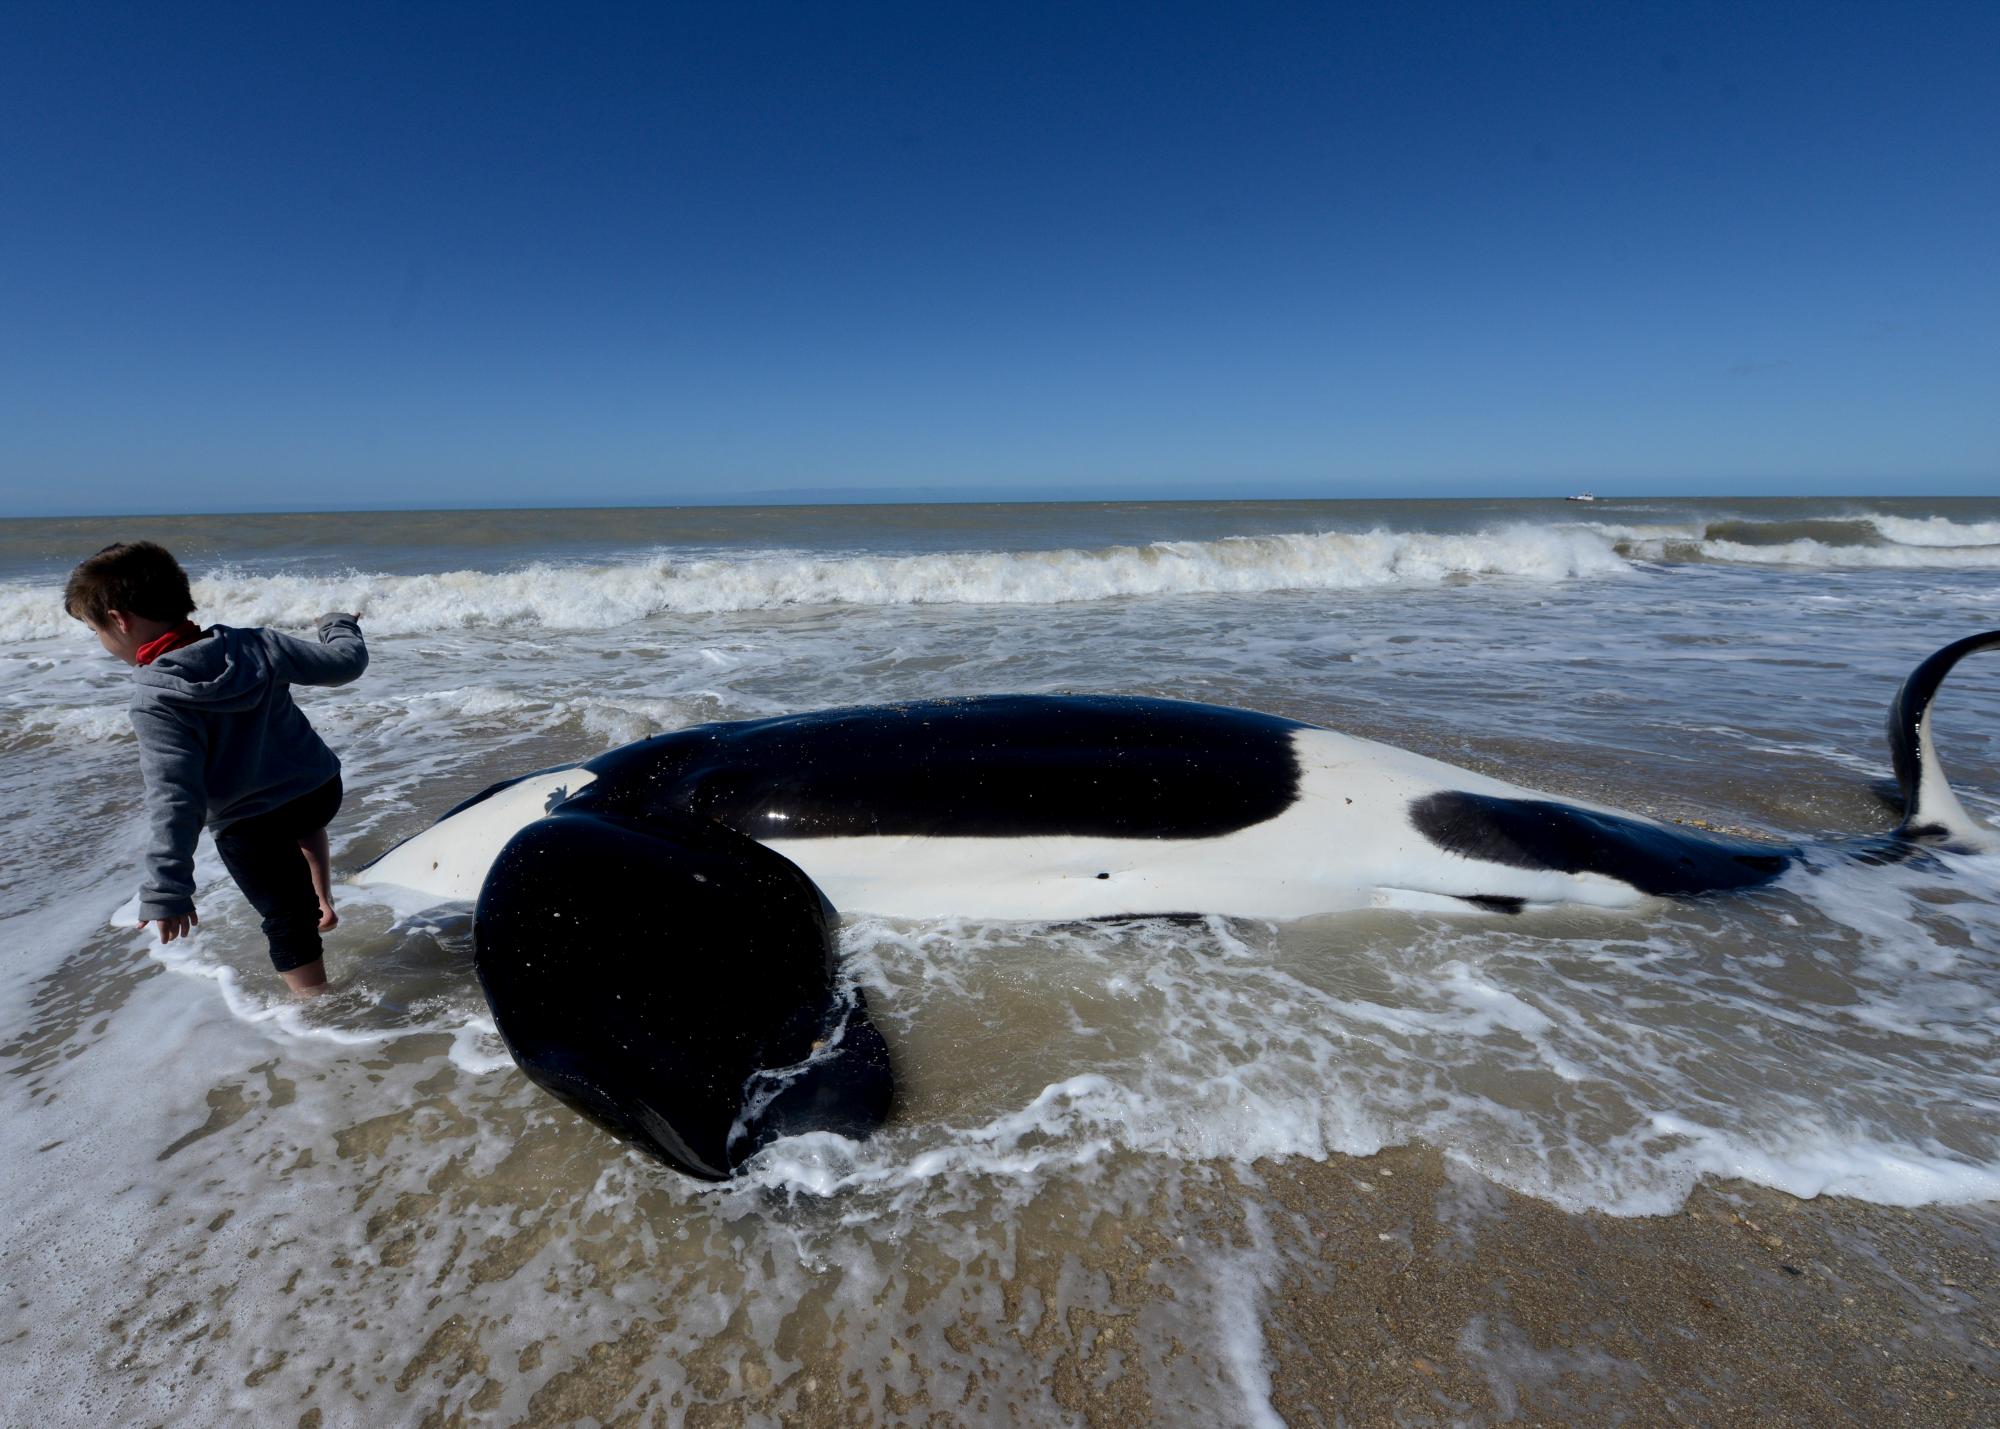 Un joven camina junto a una orca muerta cerca de Mar Chiquita, Argentina, el lunes 16 de septiembre de 2019. Siete orcas fueron varadas en la costa antes de que los rescatistas y voluntarios devolvieran seis de ellas al mar, pero una murió en el proceso. 